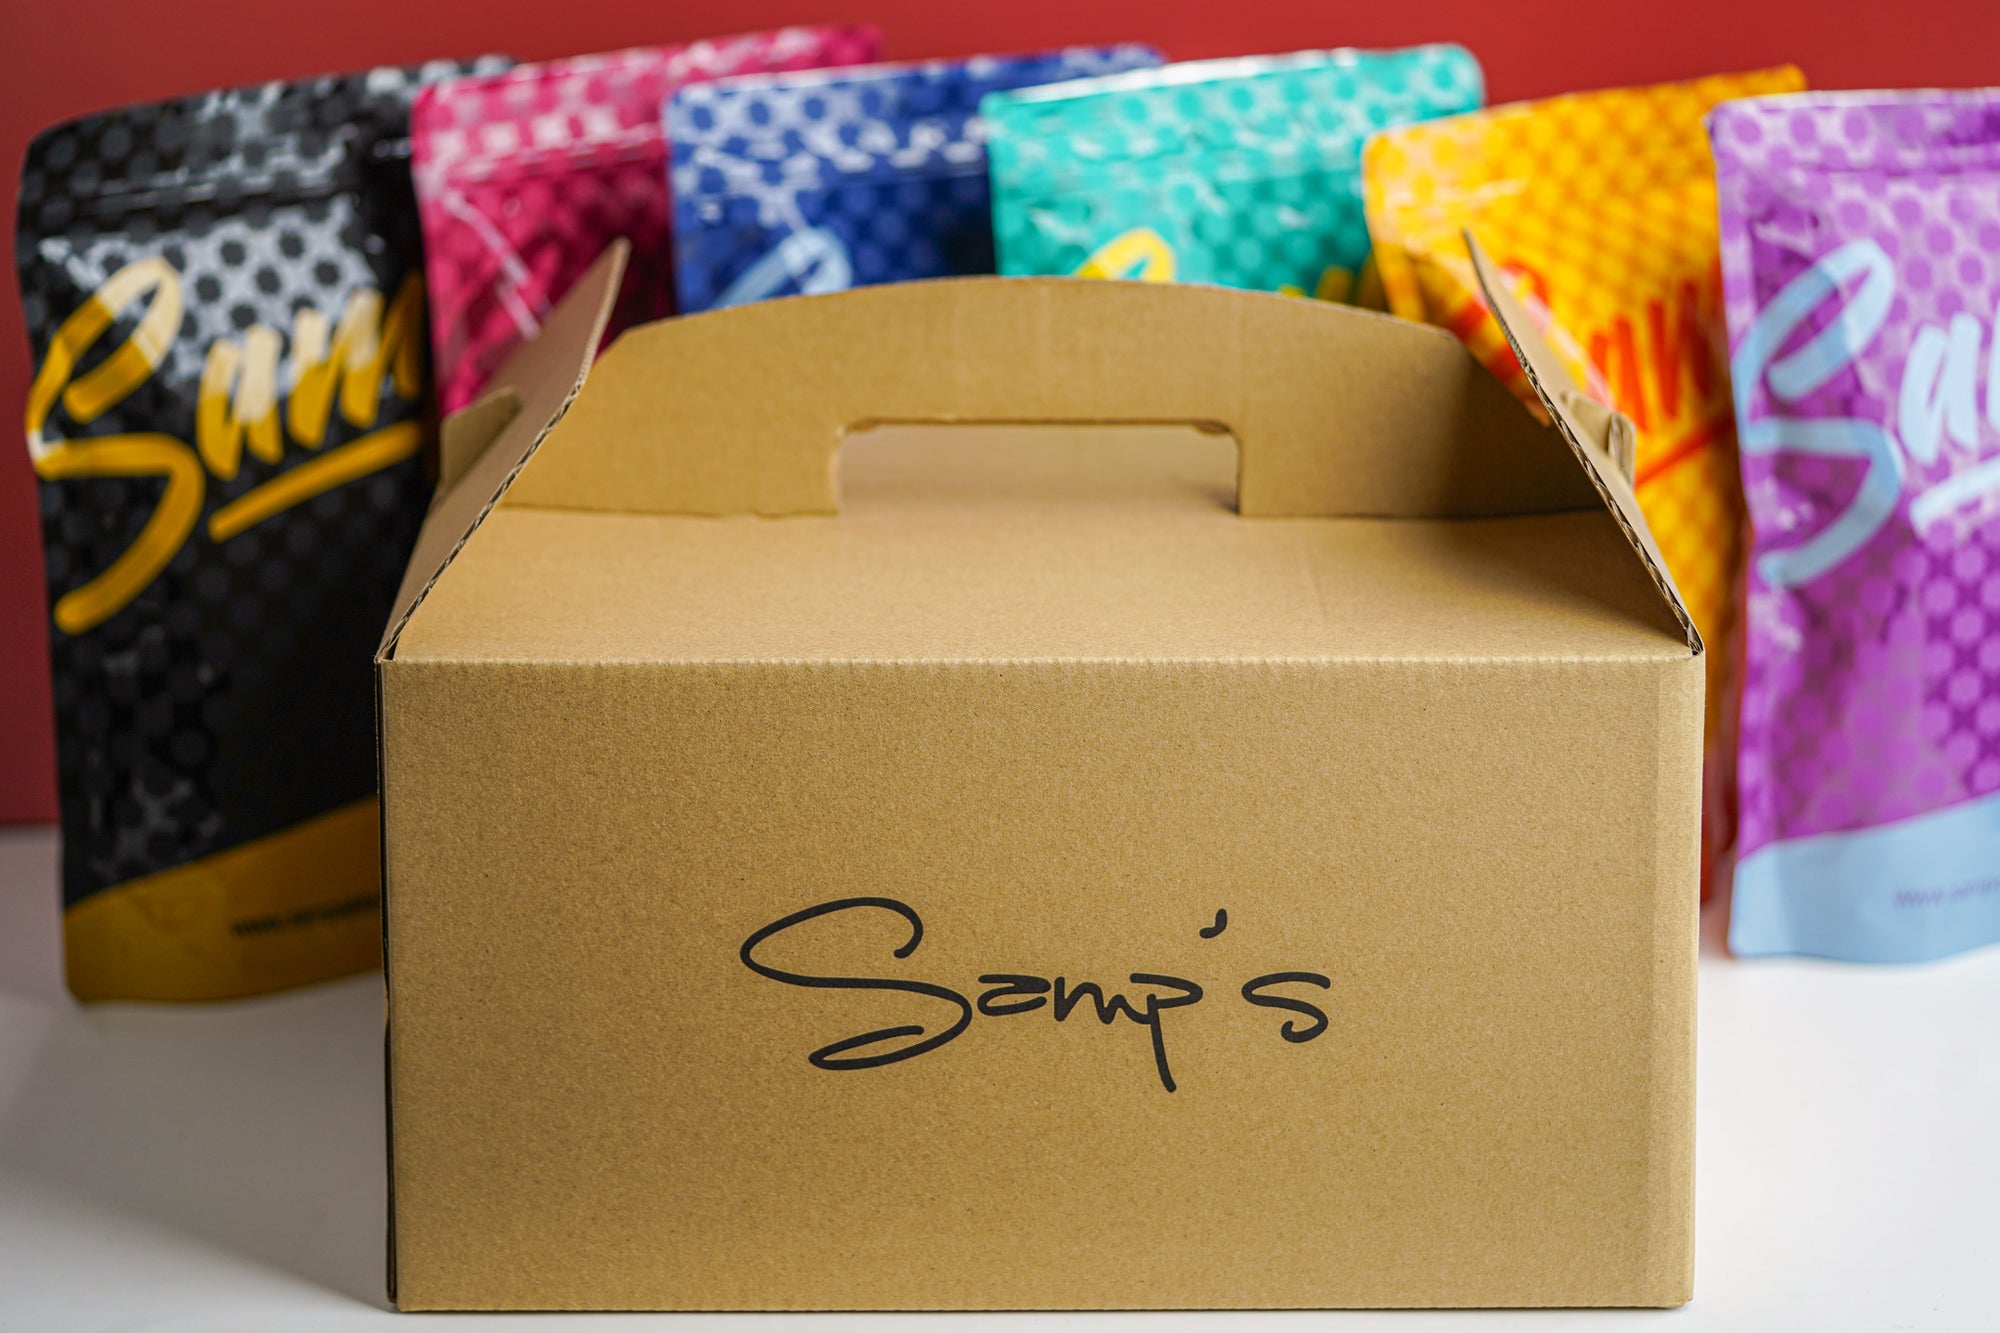 Samp's Popcorn Gift Box